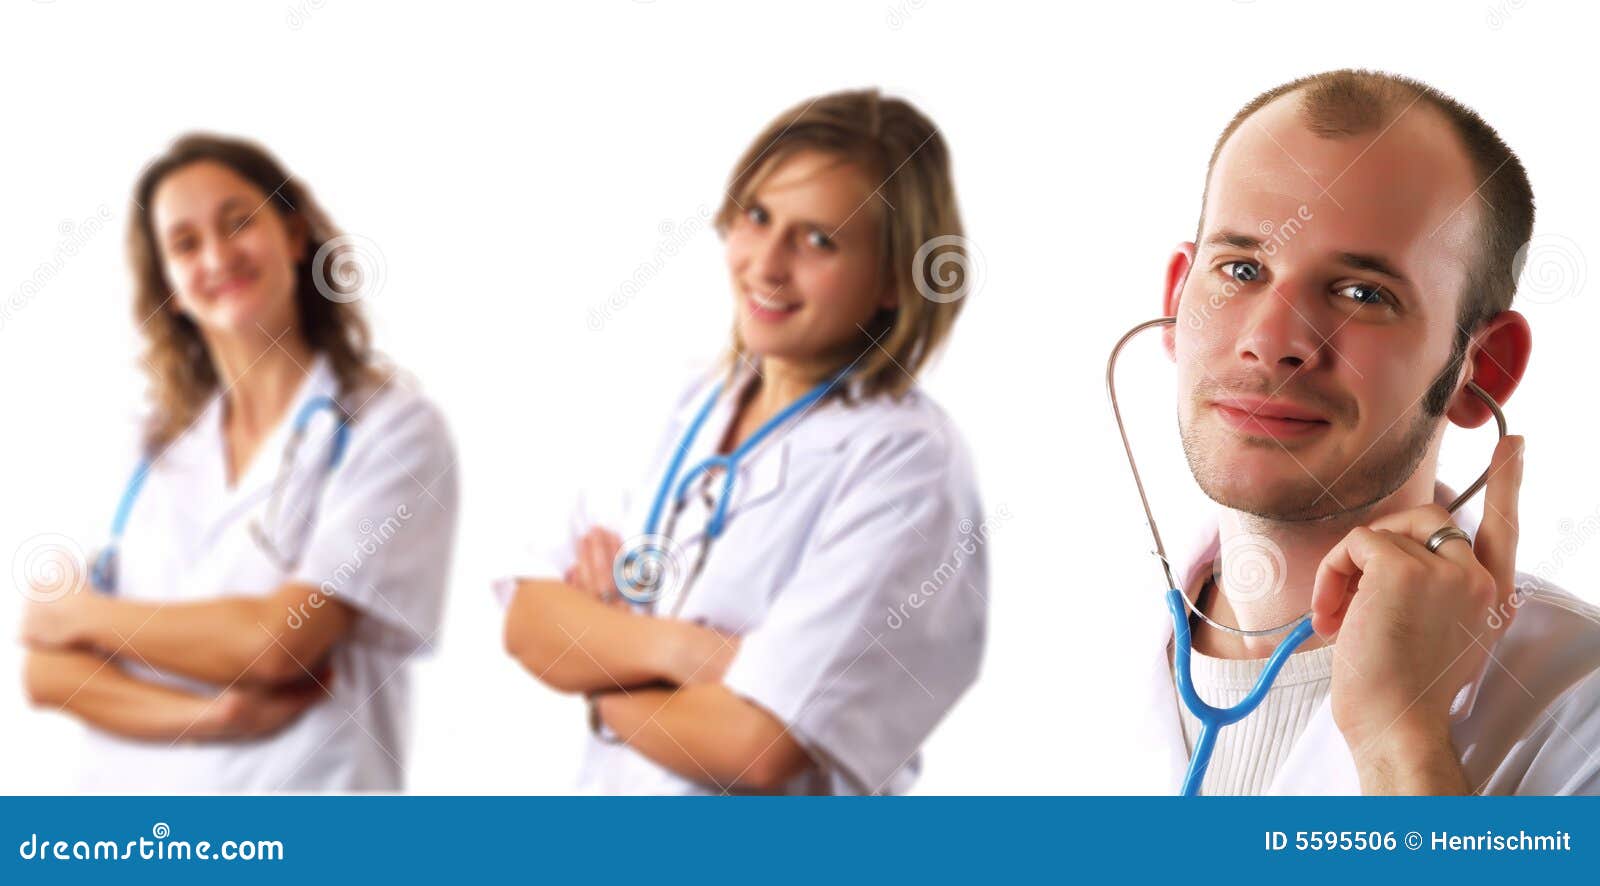 Doktorteam. Ein attraktiver Doktor und zwei hübsche Damedoktoren lächeln. Sie haben Stethoskope und sie tragen weiße Mäntel.